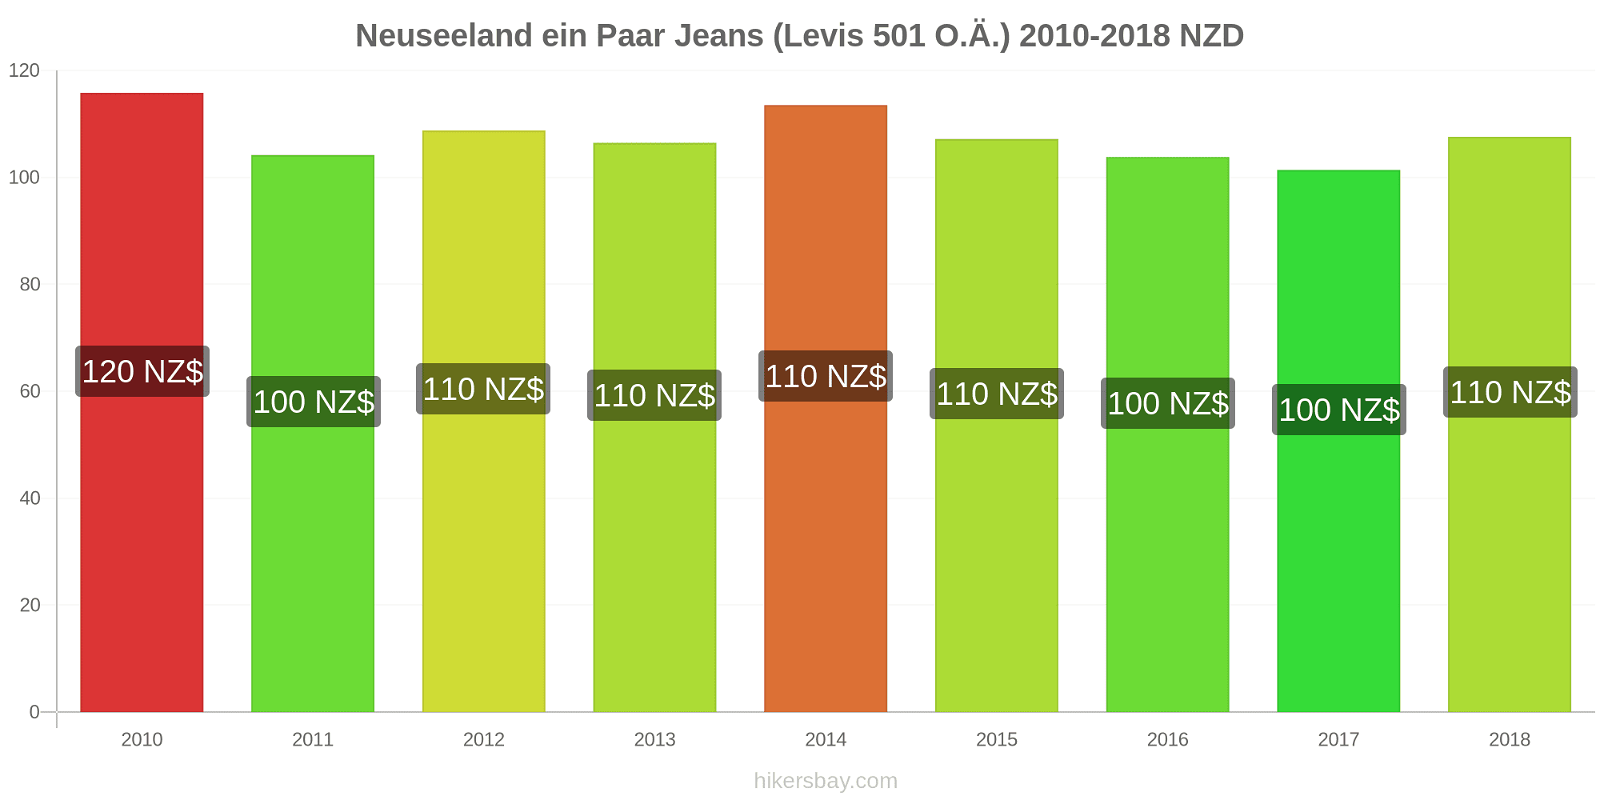 Neuseeland Preisänderungen 1 Paar Jeans (Levis 501 oder ähnliche) hikersbay.com